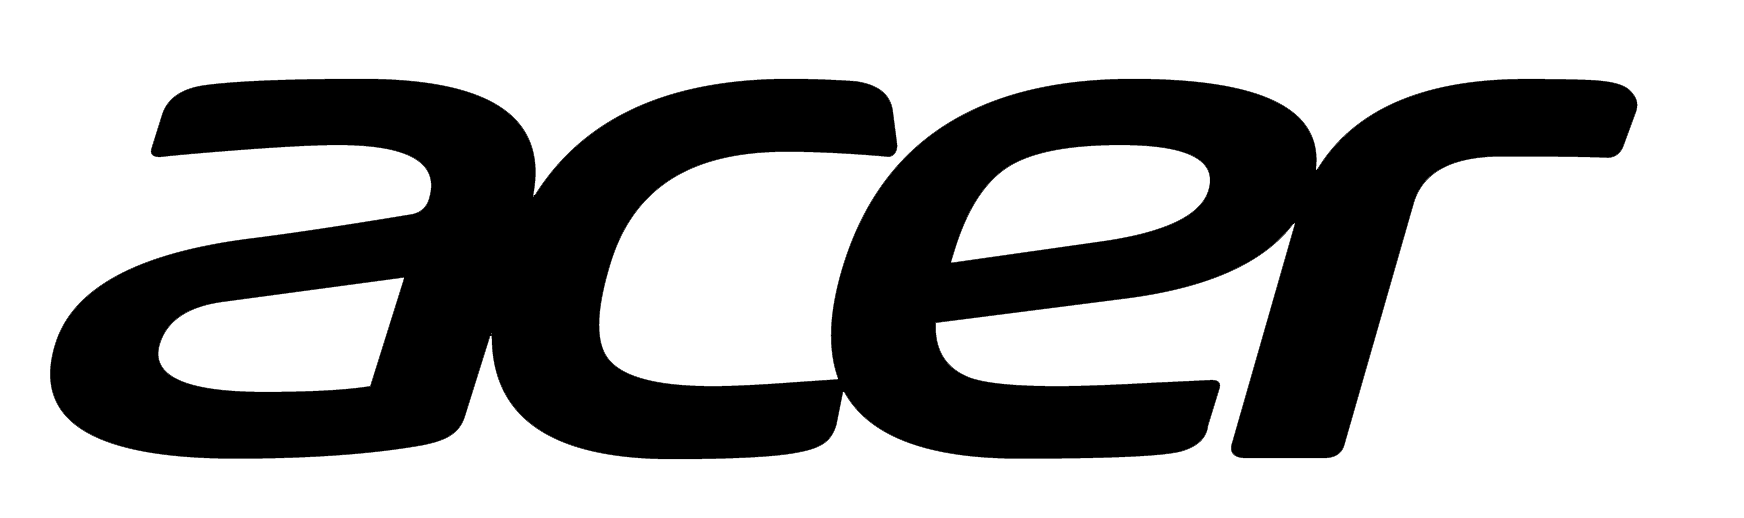 Acer_logo_PNG4